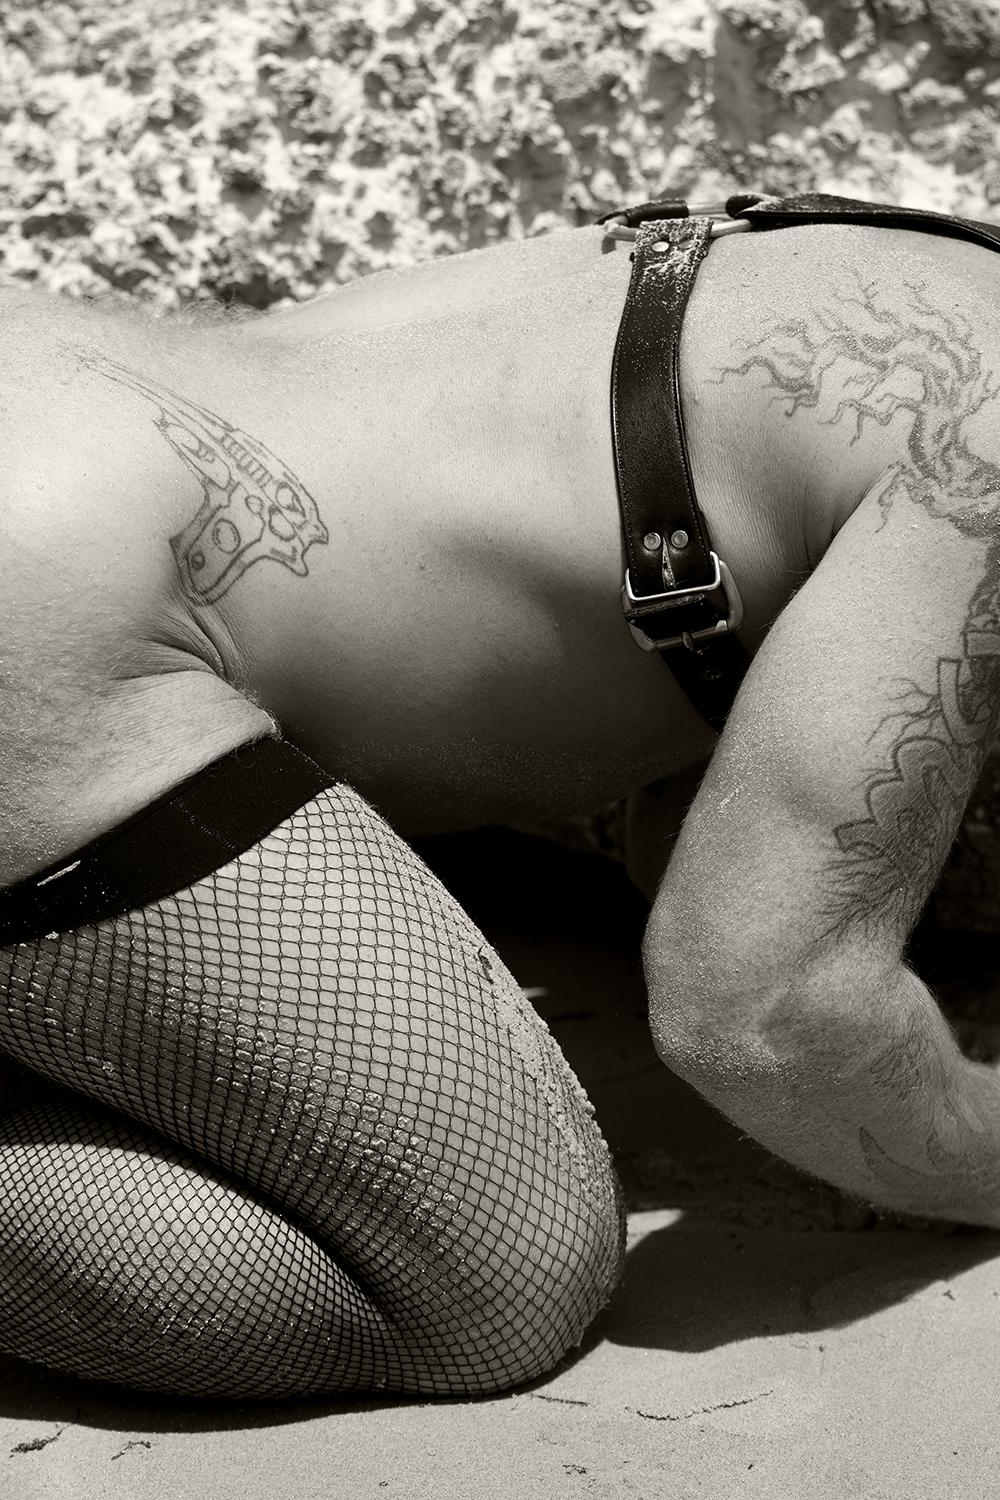 Ricky Cohete Black and White Photograph – Gurt. Schwarz-Weiß-Fotografie in limitierter Auflage